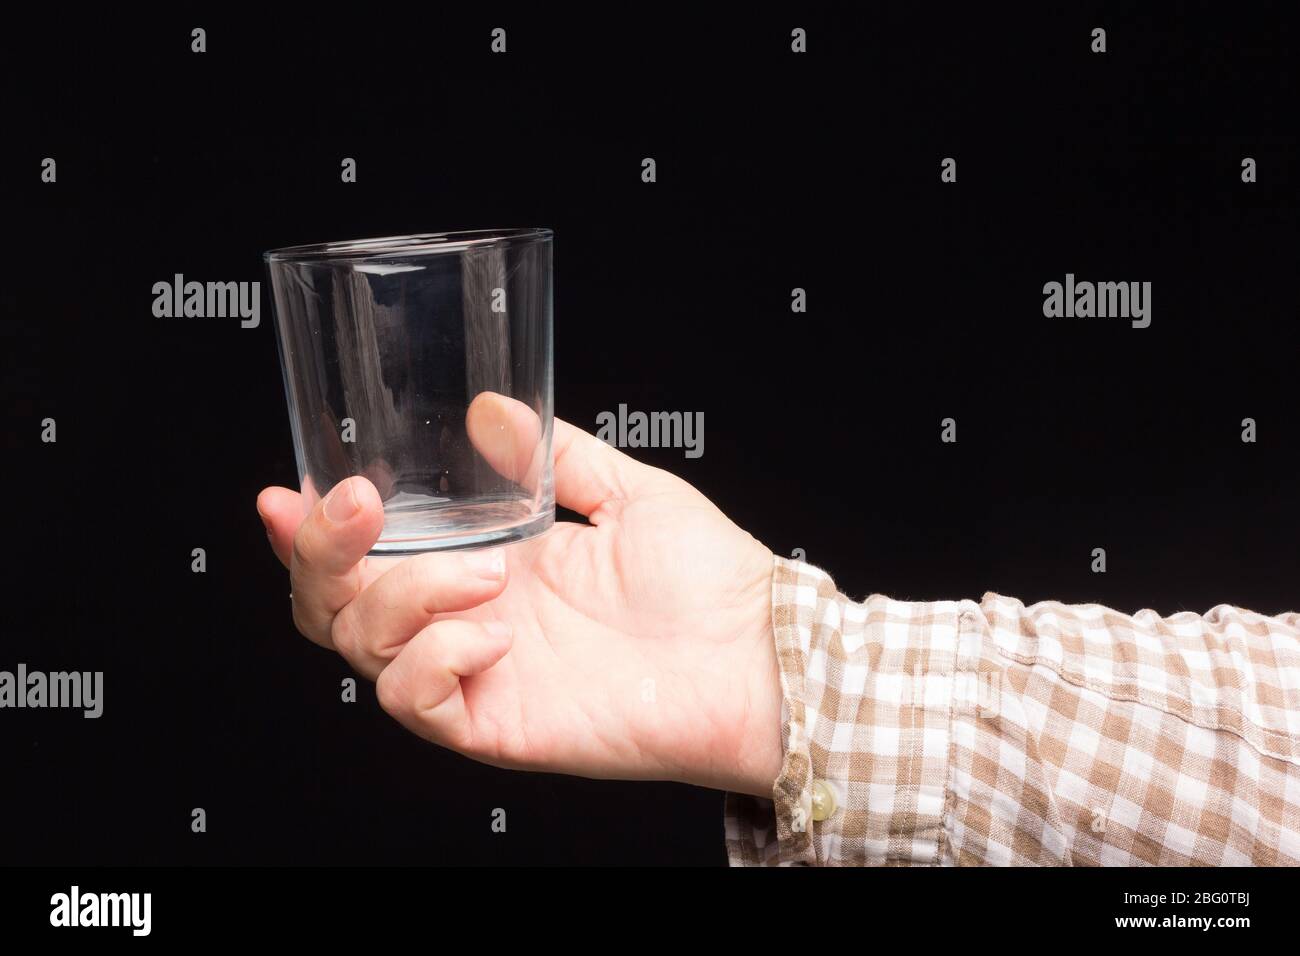 Transparente Glasschale in der Hand einer Person. Glas mit Wasser oder transparenter Flüssigkeit gefüllt. Trinkwasser Stockfoto